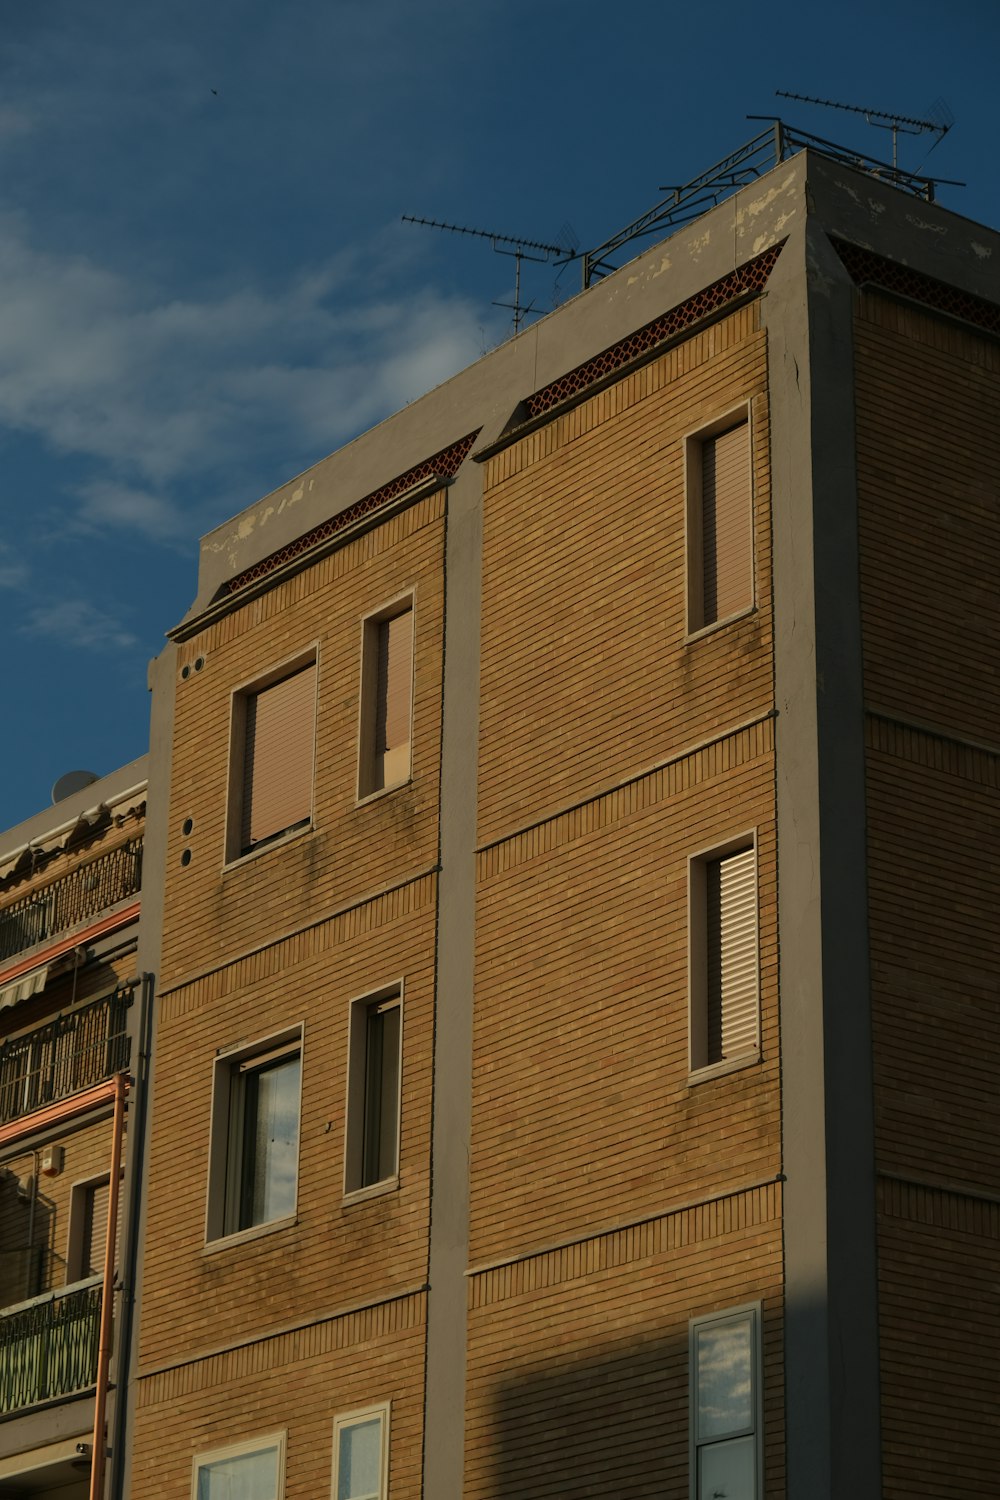 Ein hohes Backsteingebäude mit vielen Fenstern